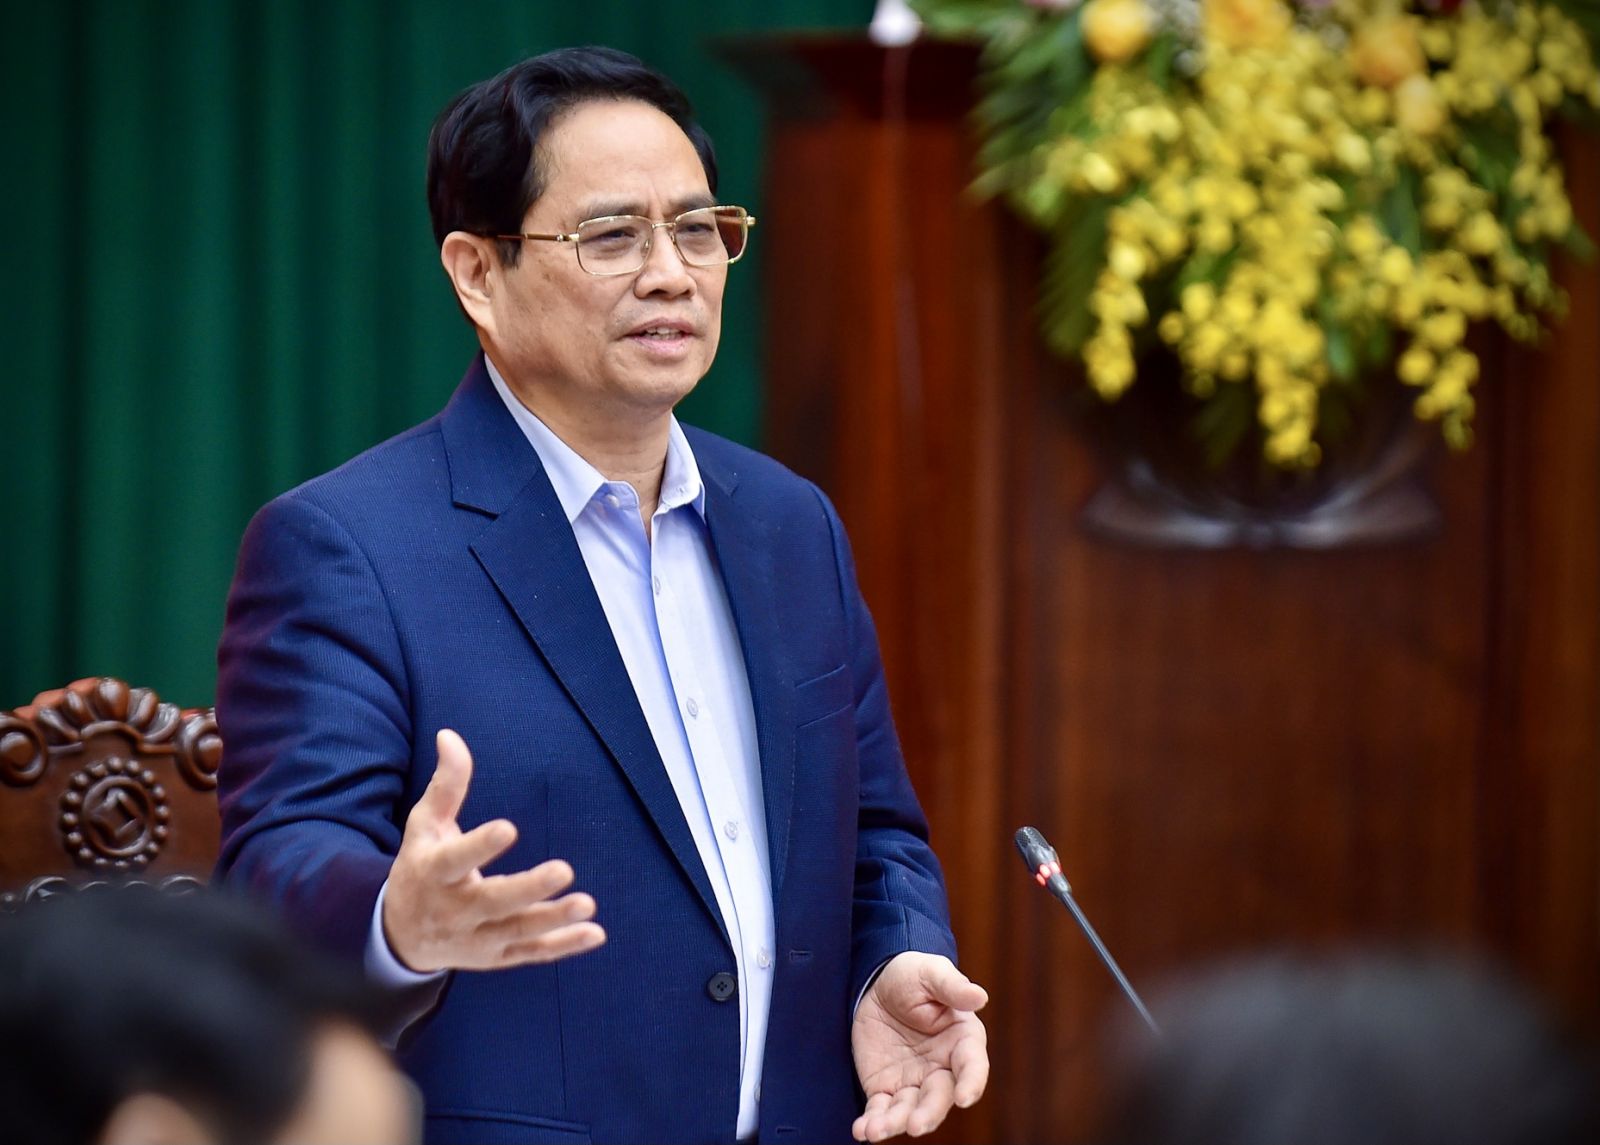 Thủ tướng Phạm Minh Chính: Hưng Yên có điều kiện để phát triển toàn diện, hài hòa, nhanh và bền vững